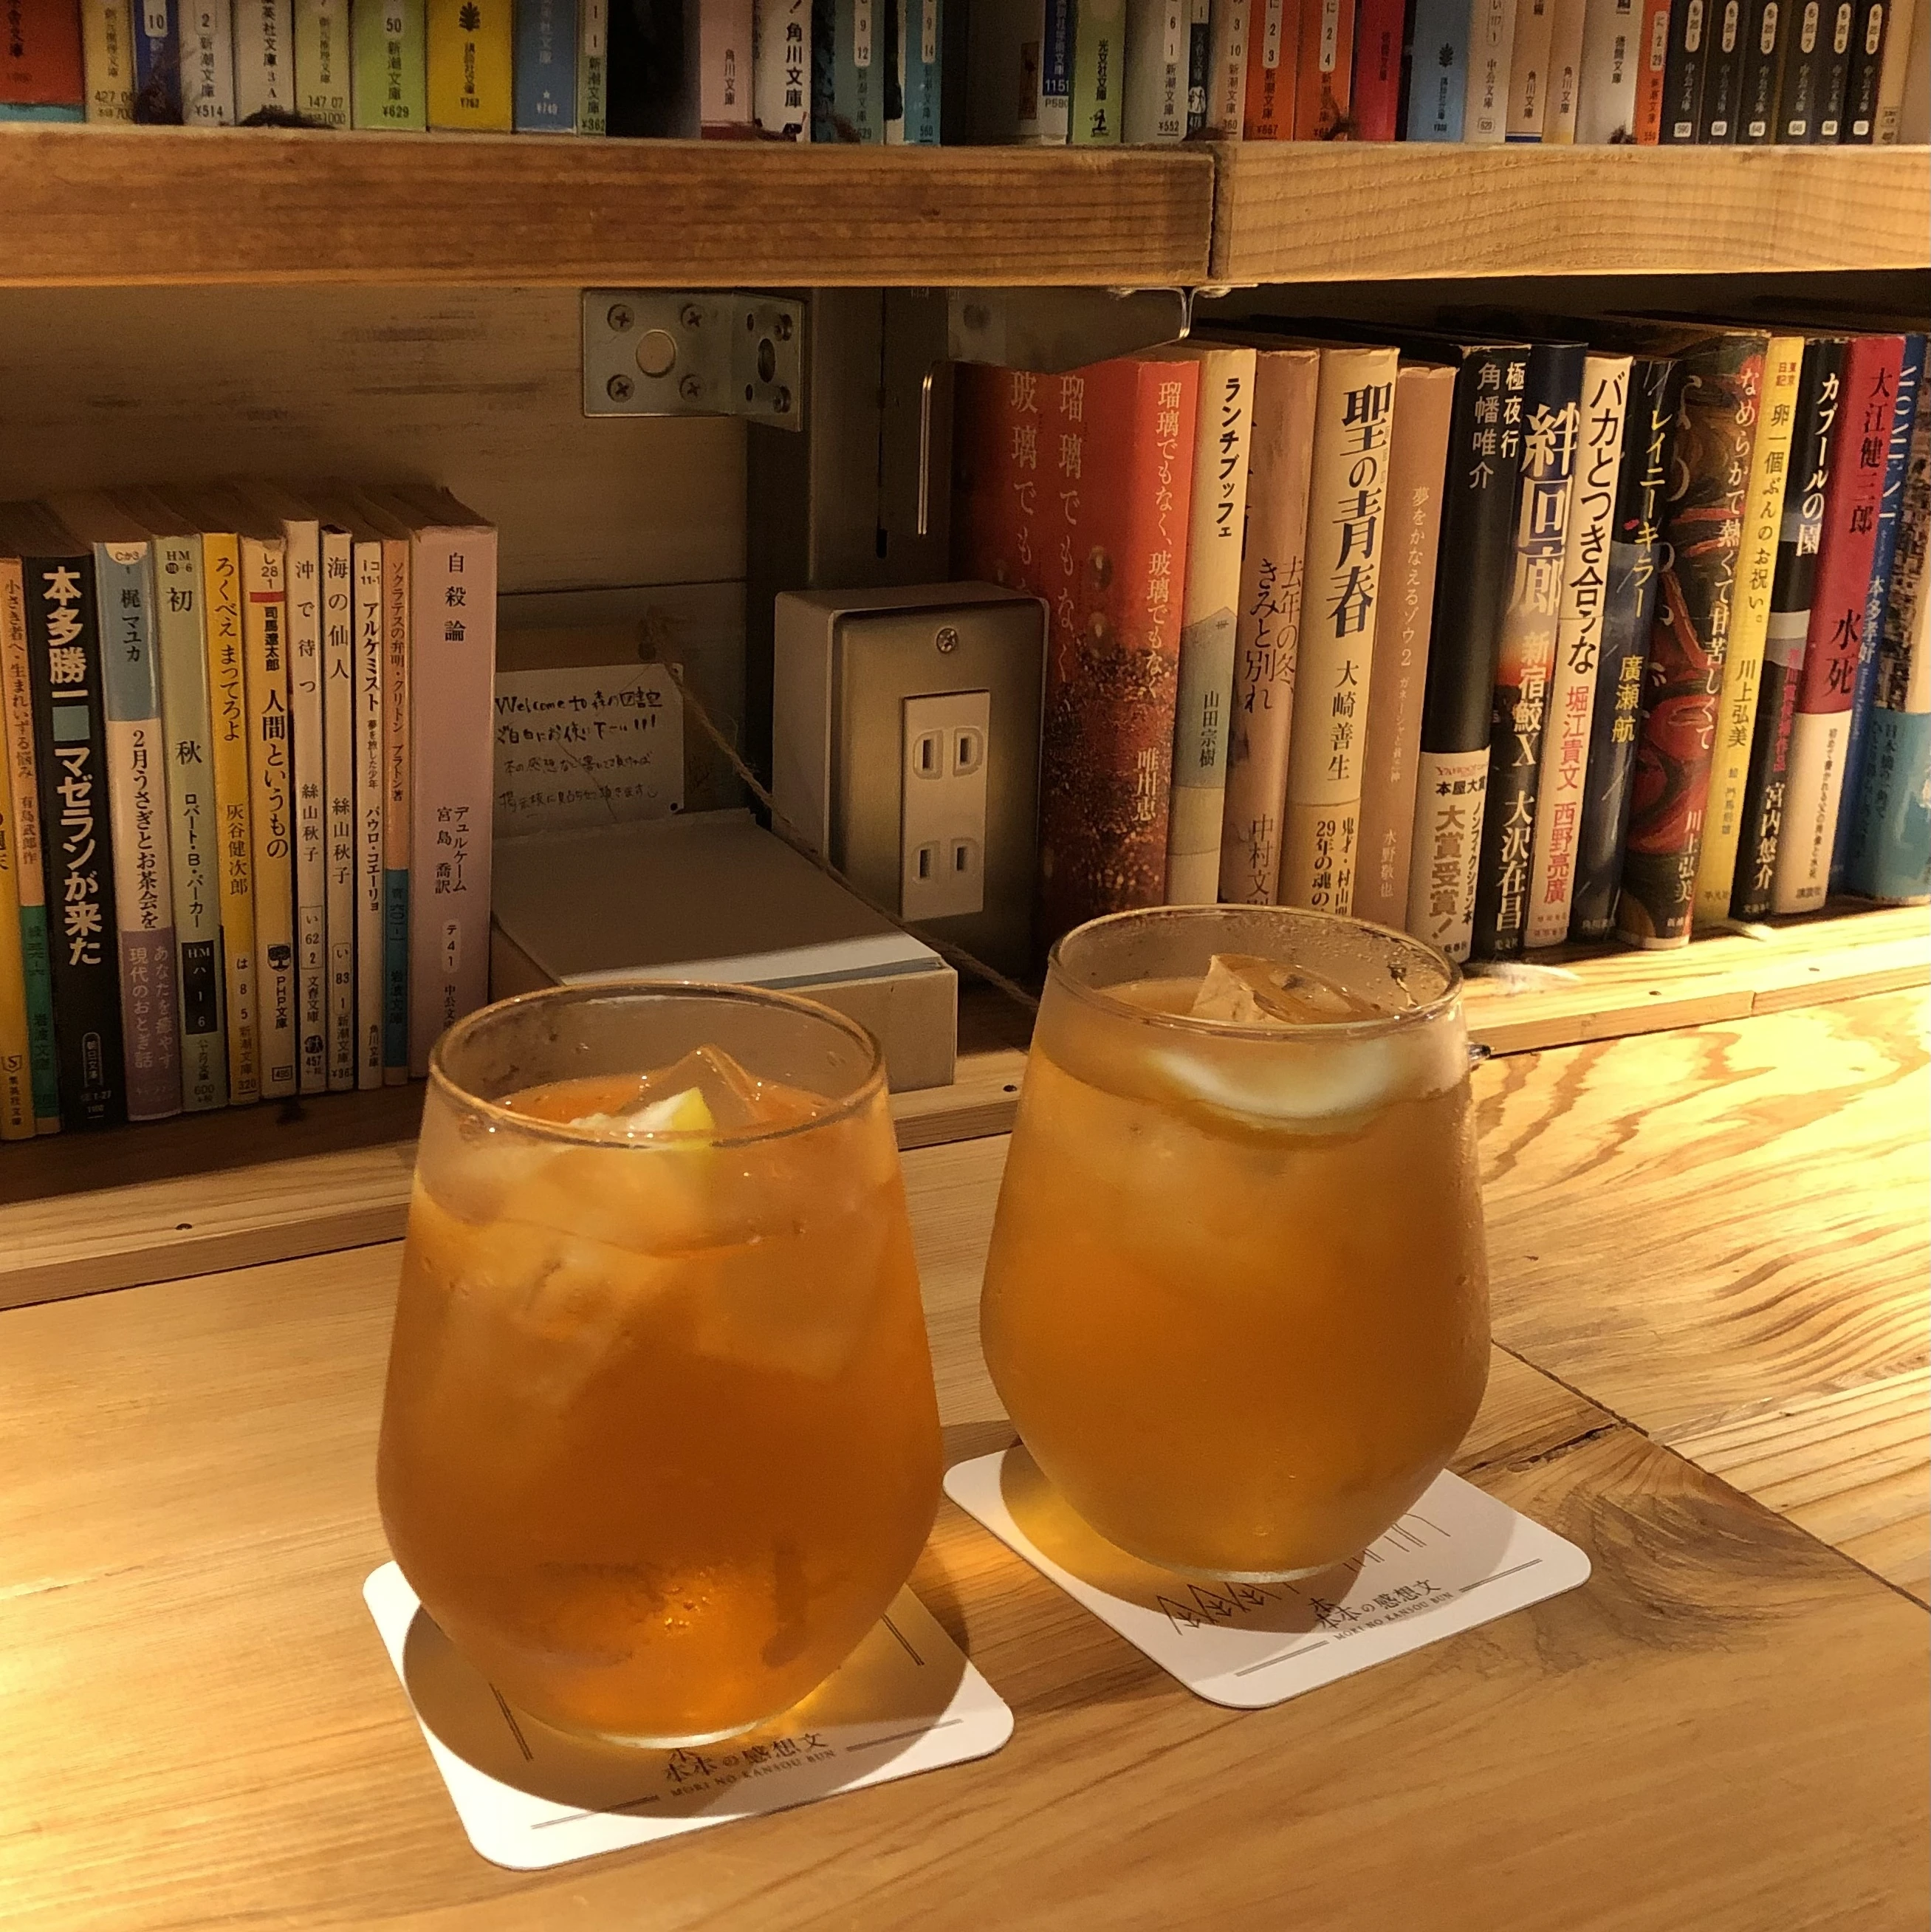 【心をまっしろに】デートや作業にピッタリな渋谷のブックカフェ「森の図書室」_1_3-1